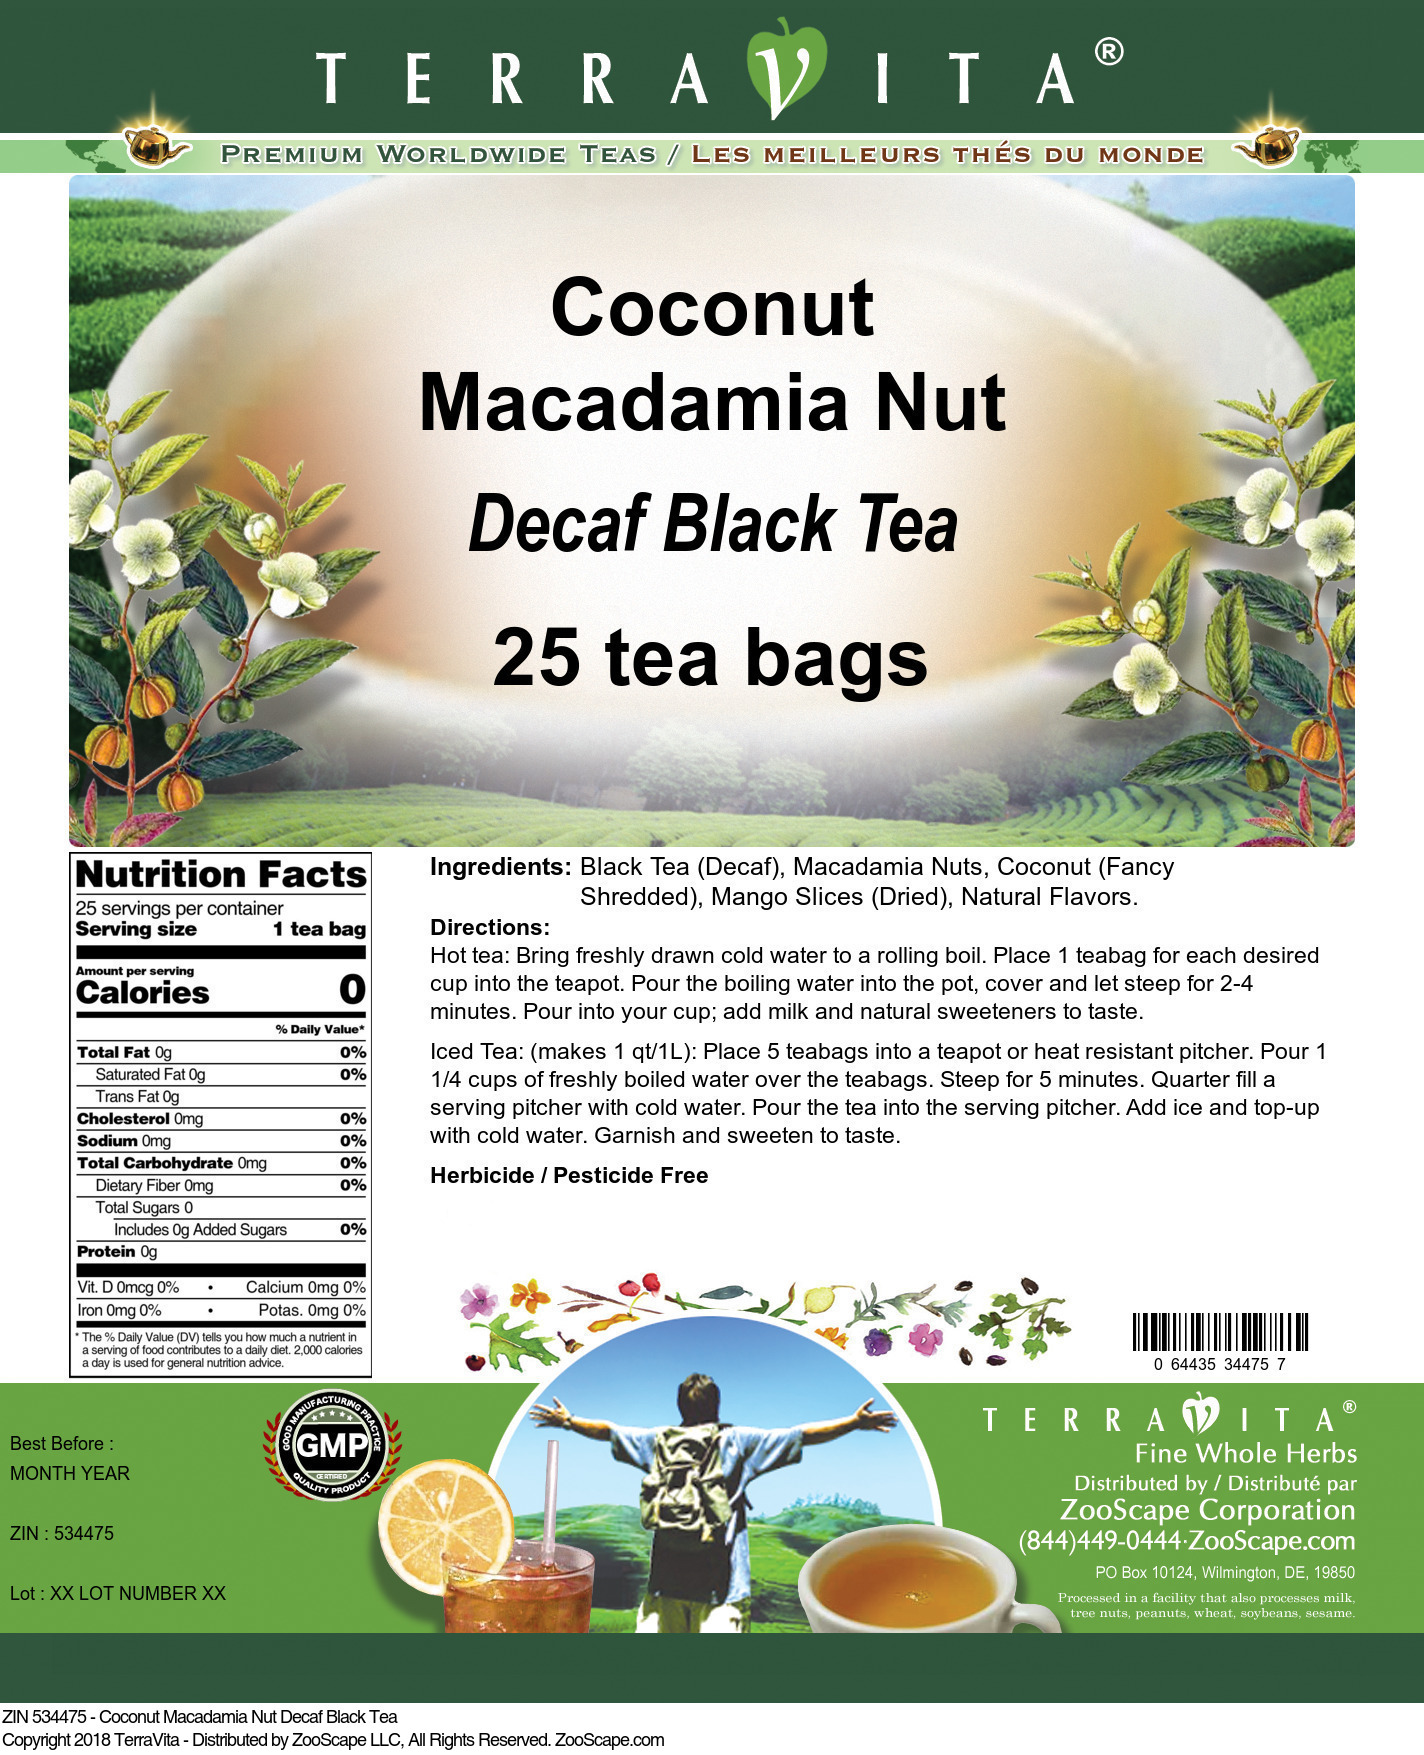 Coconut Macadamia Nut Decaf Black Tea - Label